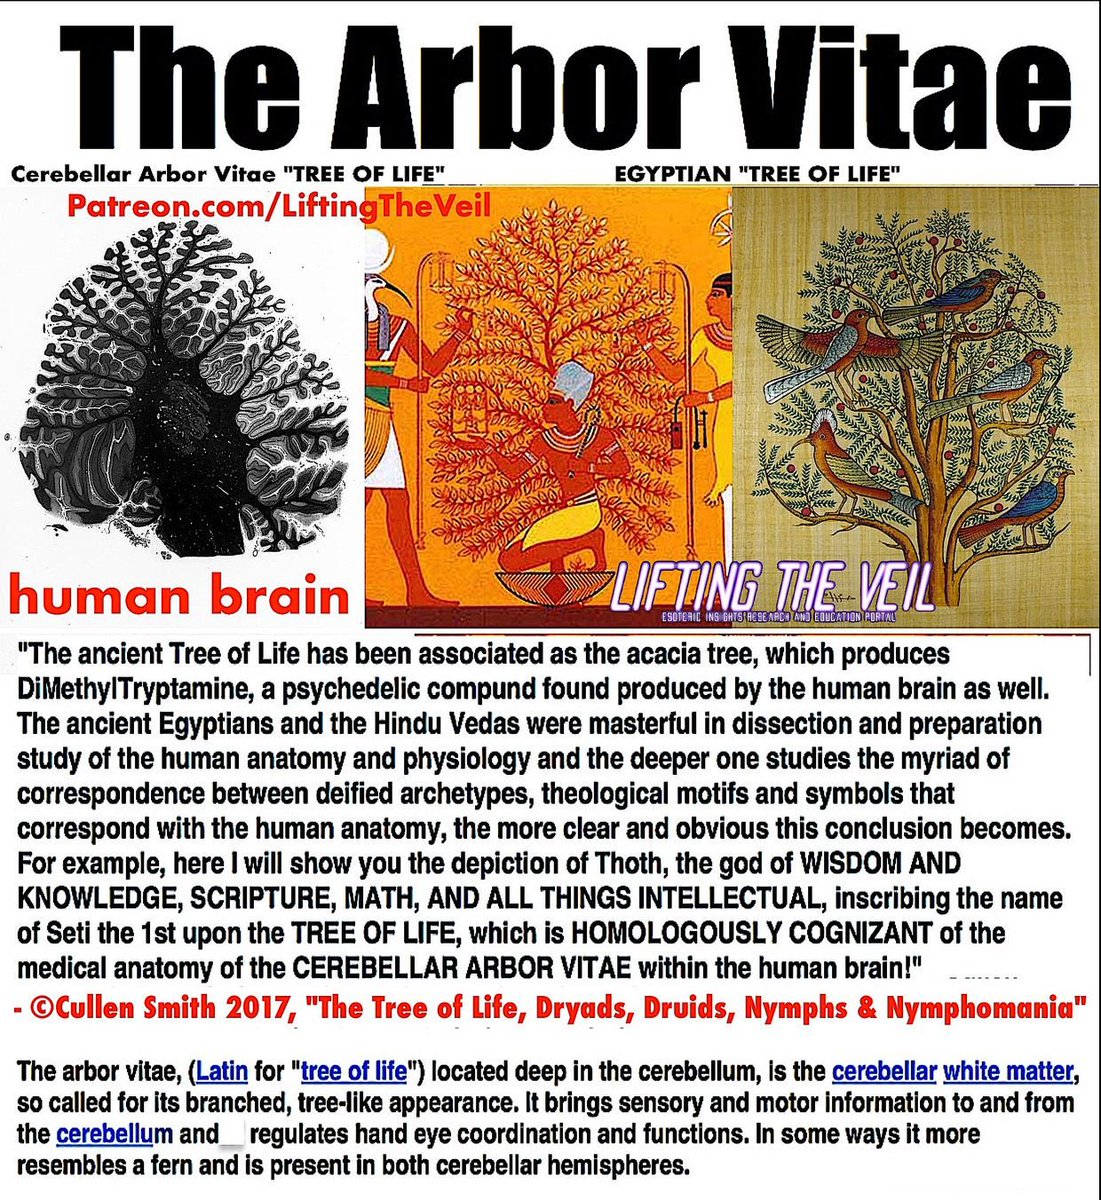 Cerebellum Arbor Vitae - Tree of Life. #Akashic  #Acacia  #Akasha  #Cerebellum